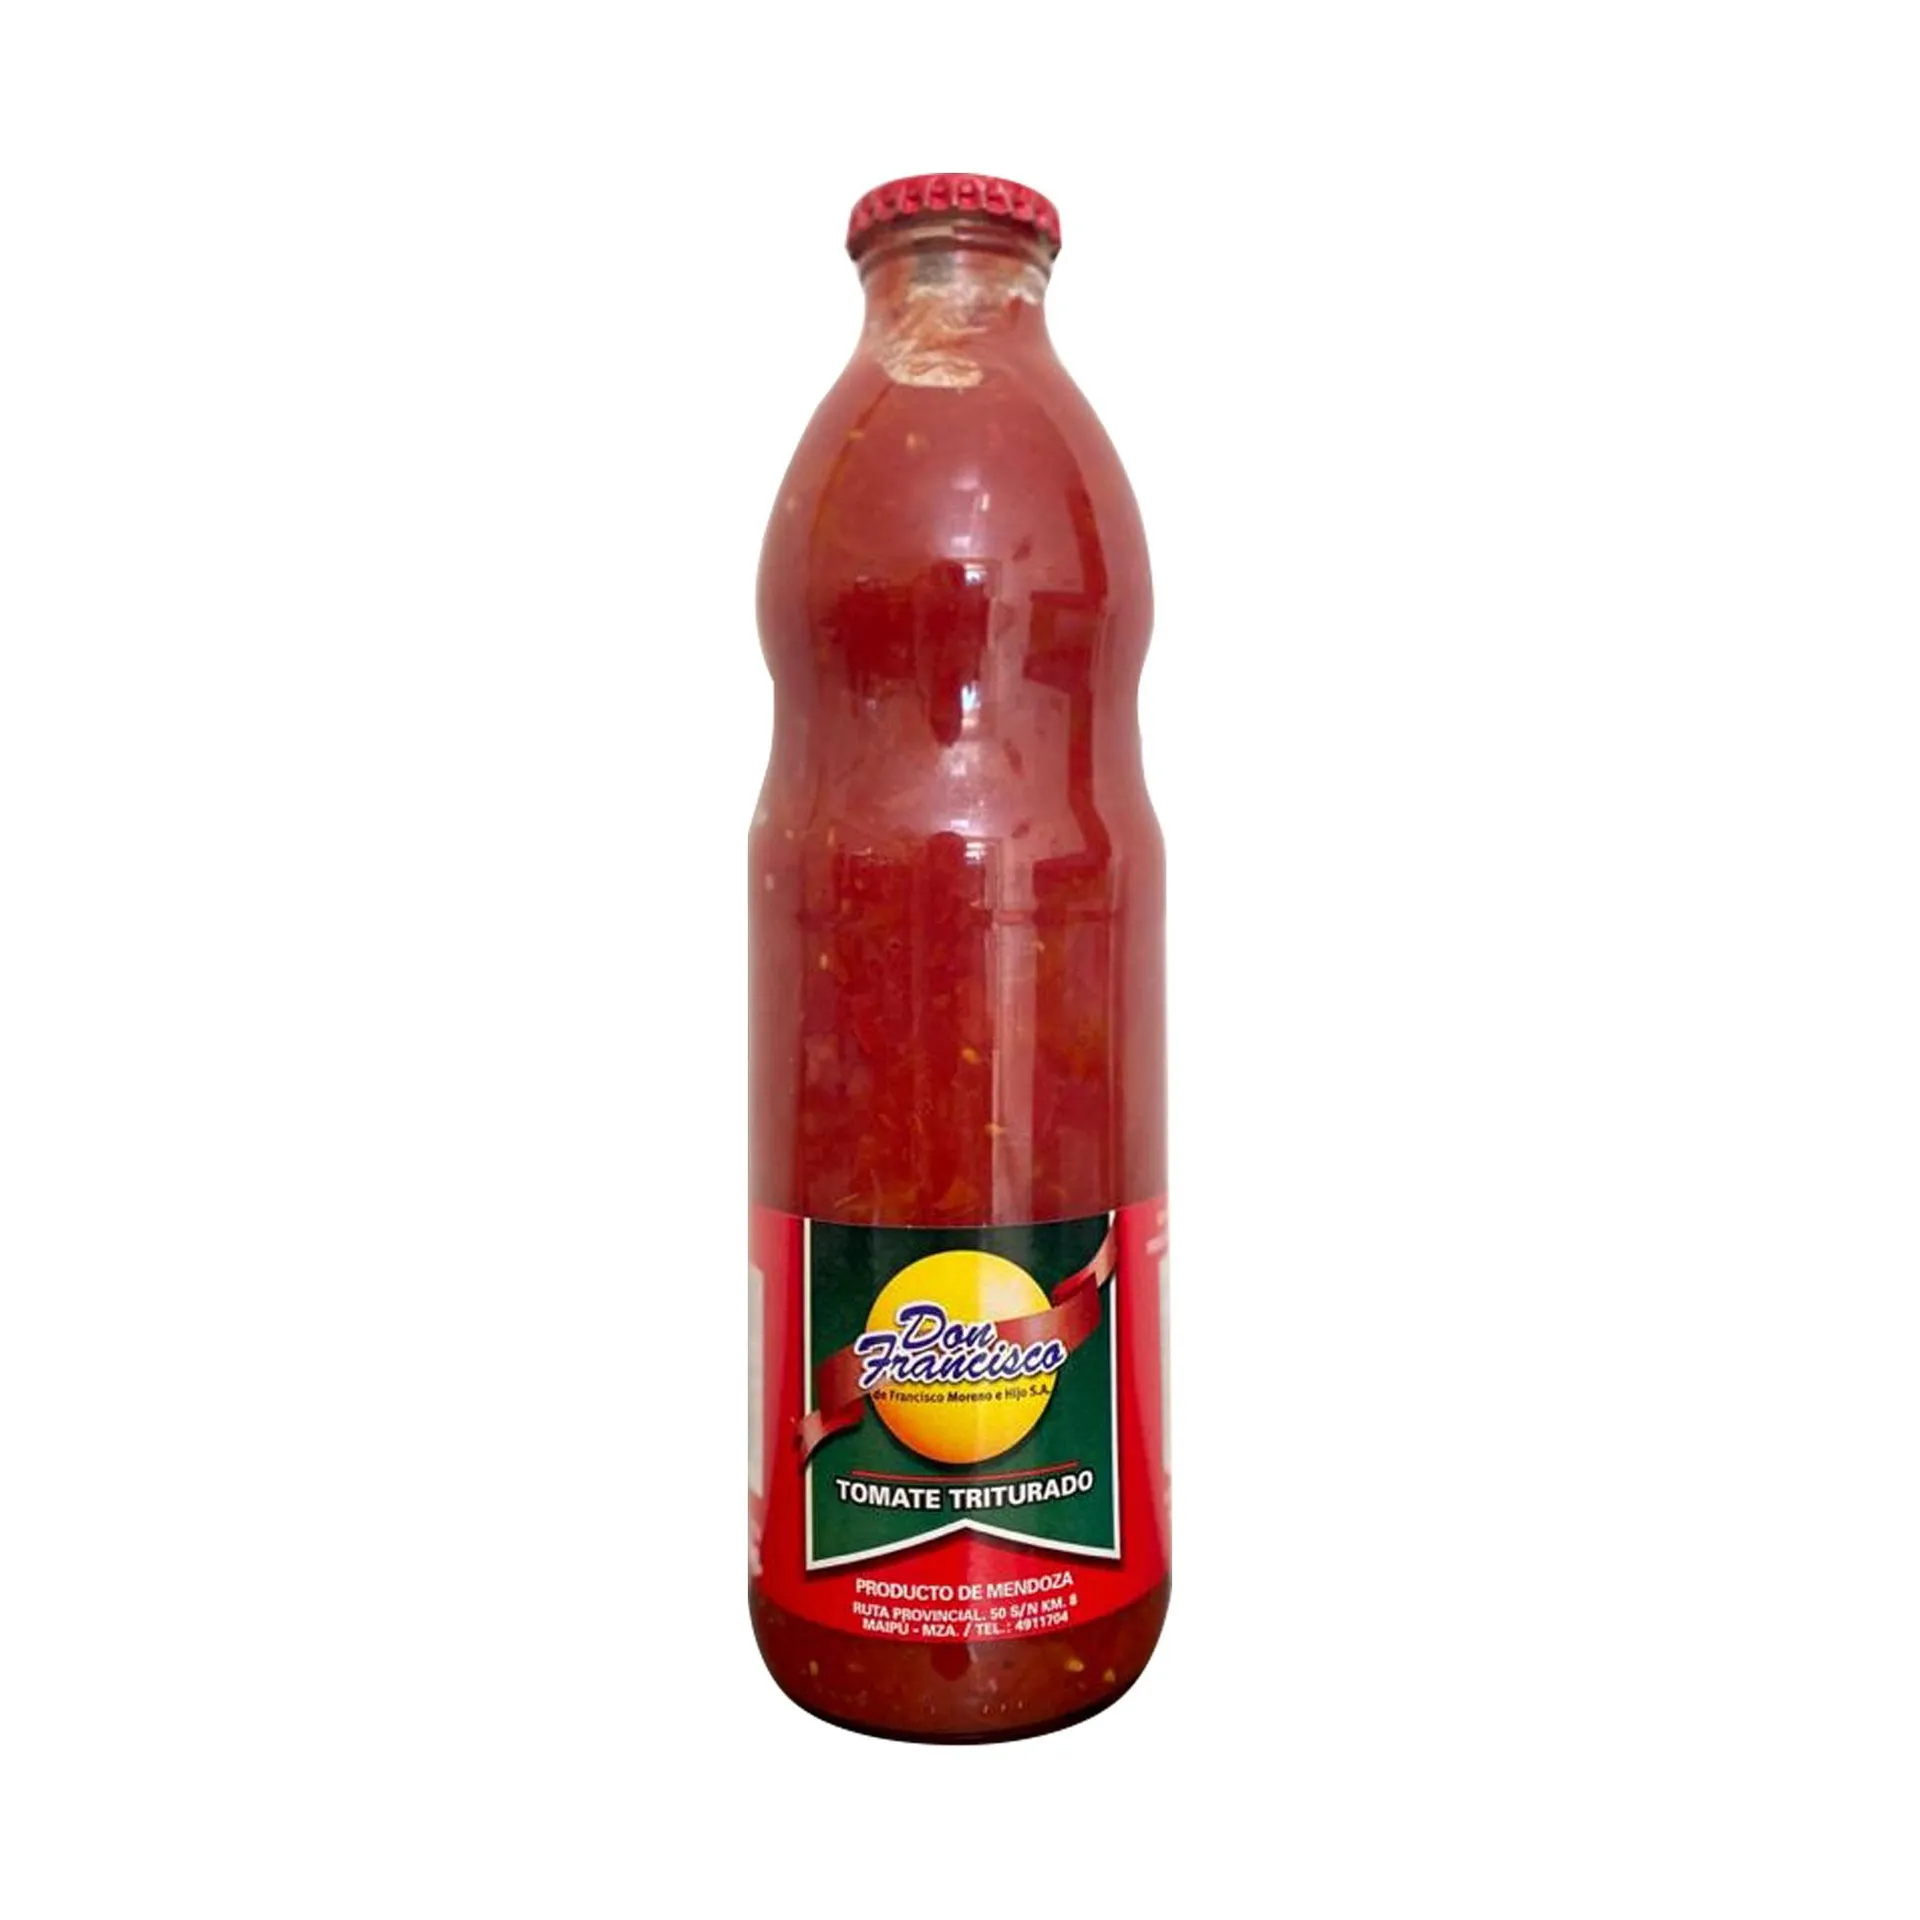 Tomate triturado Don Francisco botella 950 g. - Carrefour - Las mejores ofertas en supermercados